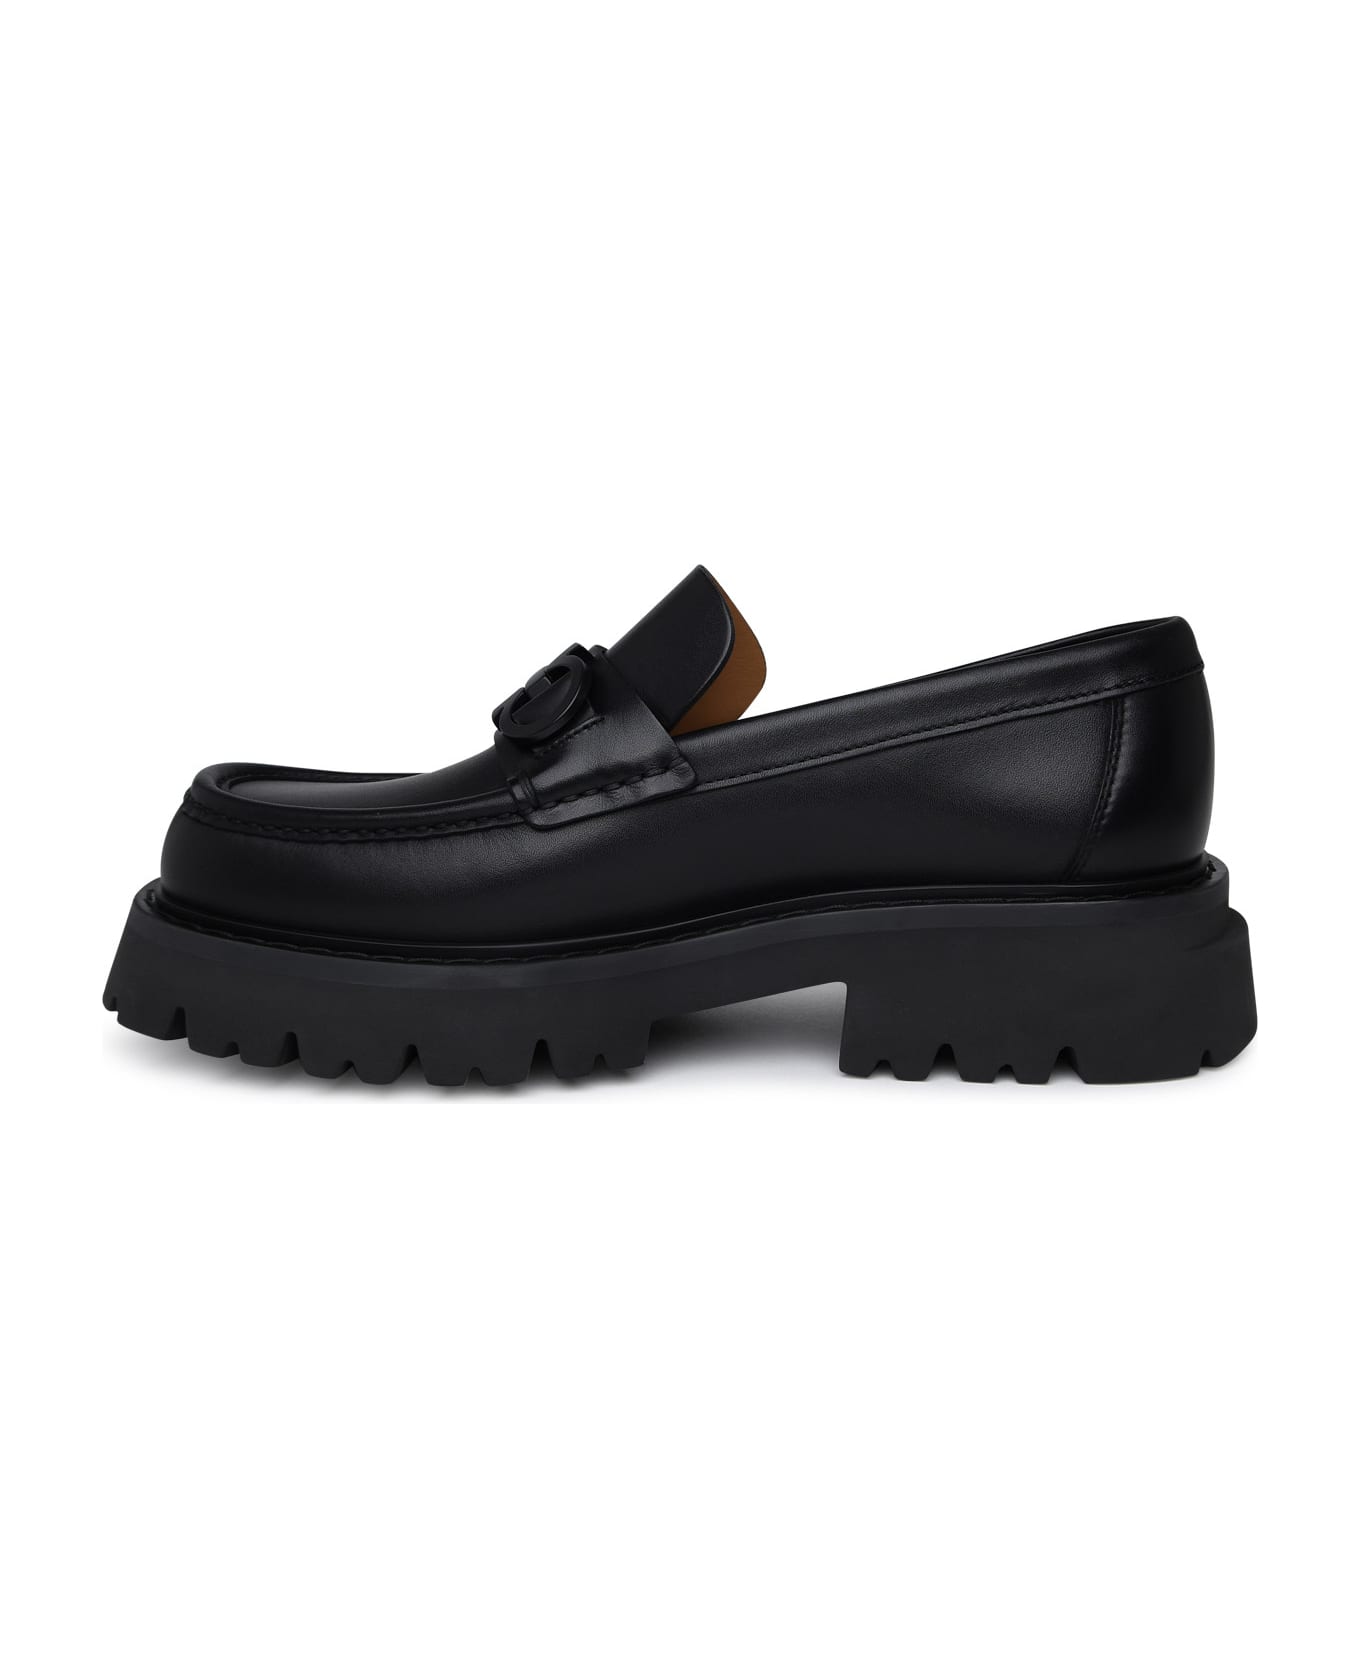 Ferragamo Black Leather Loafers